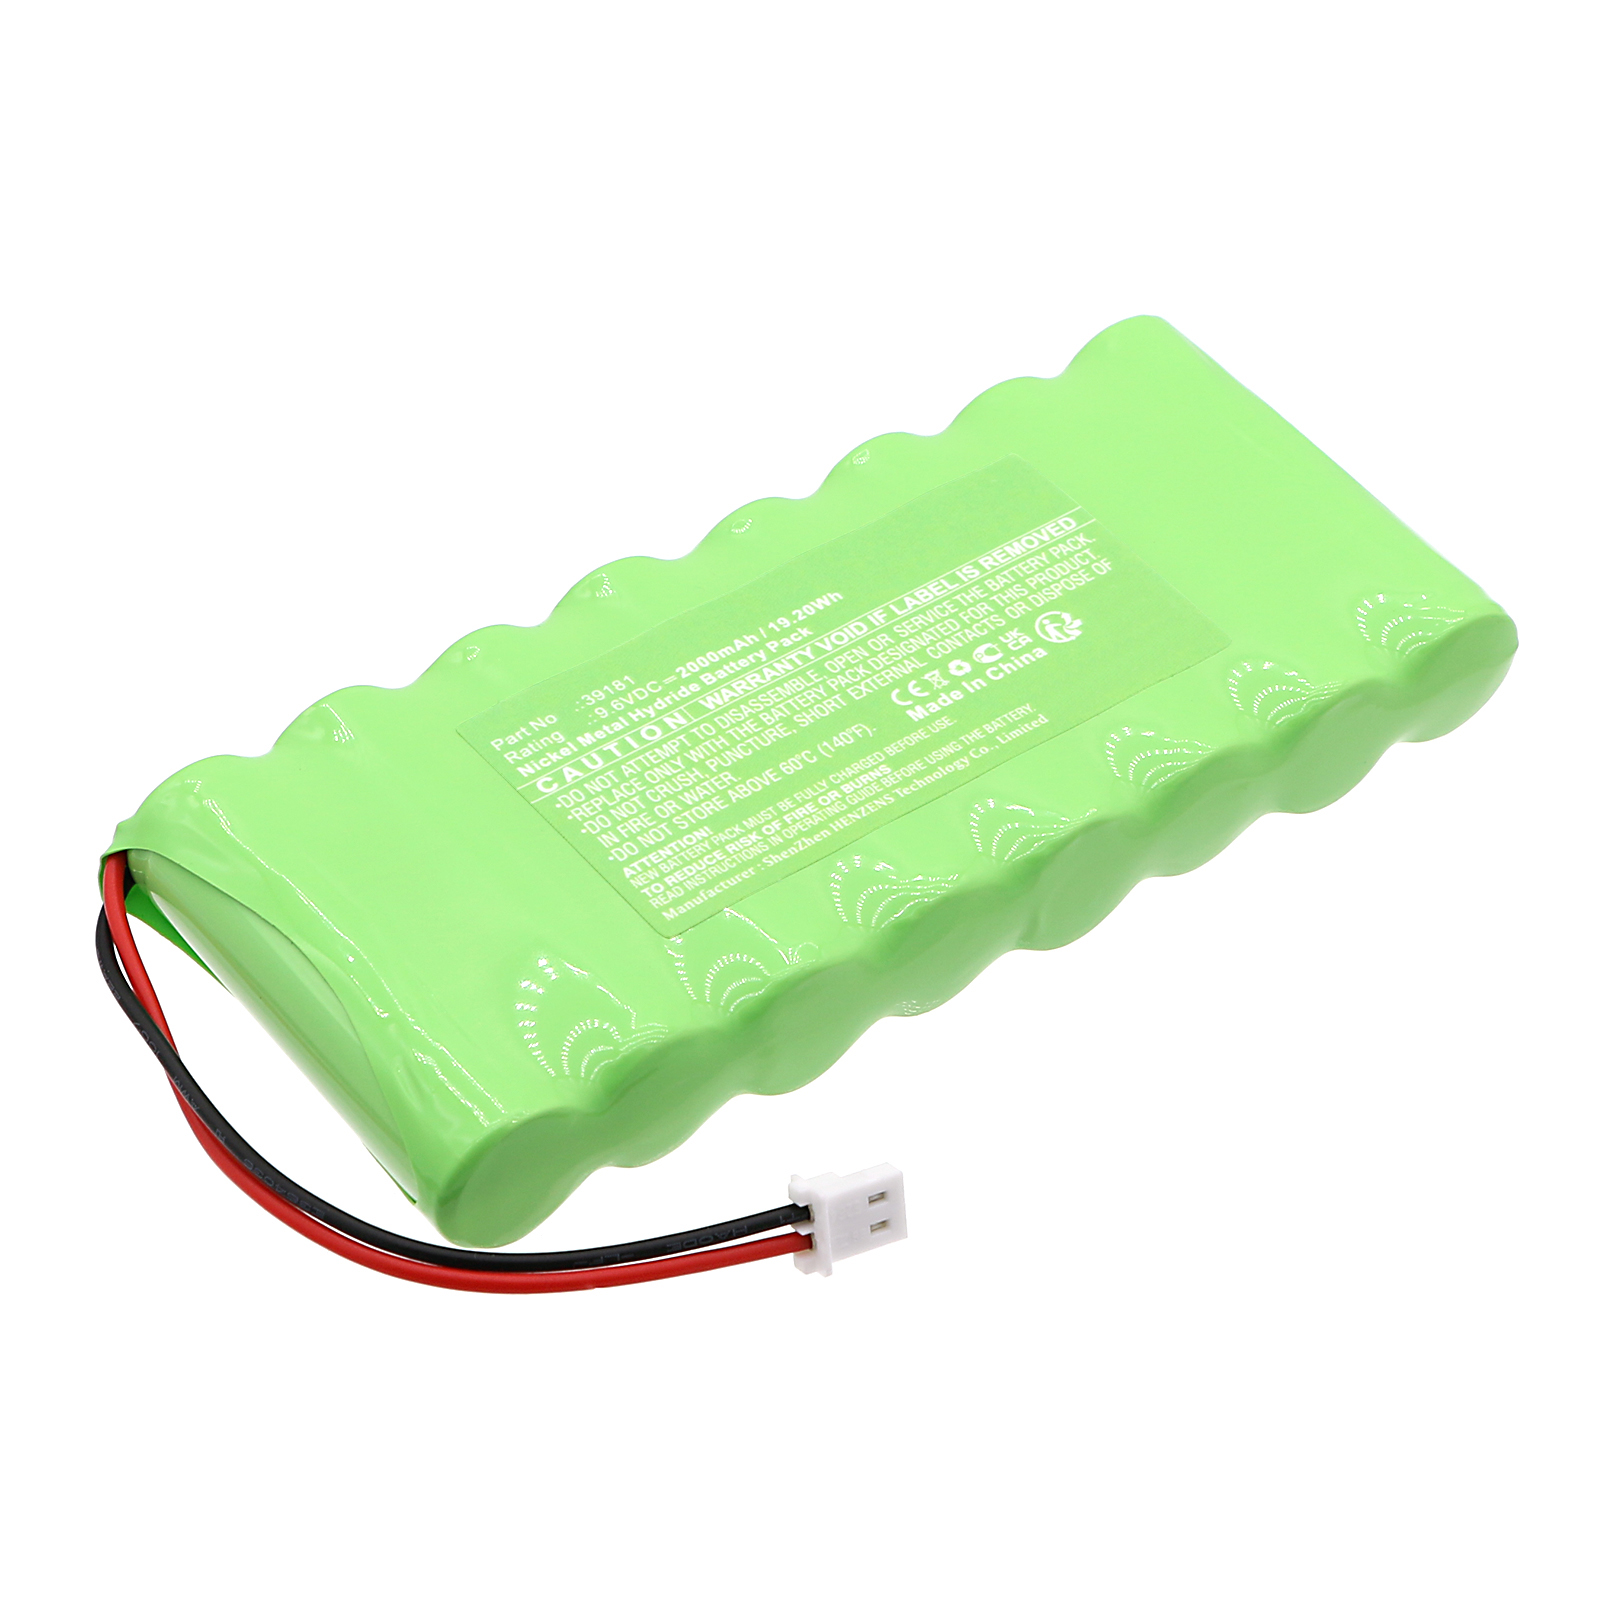 Synergy Digital Emergency Lighting Battery, Compatible with Grothe 39181 Emergency Lighting Battery (Ni-MH, 9.6V, 2000mAh)